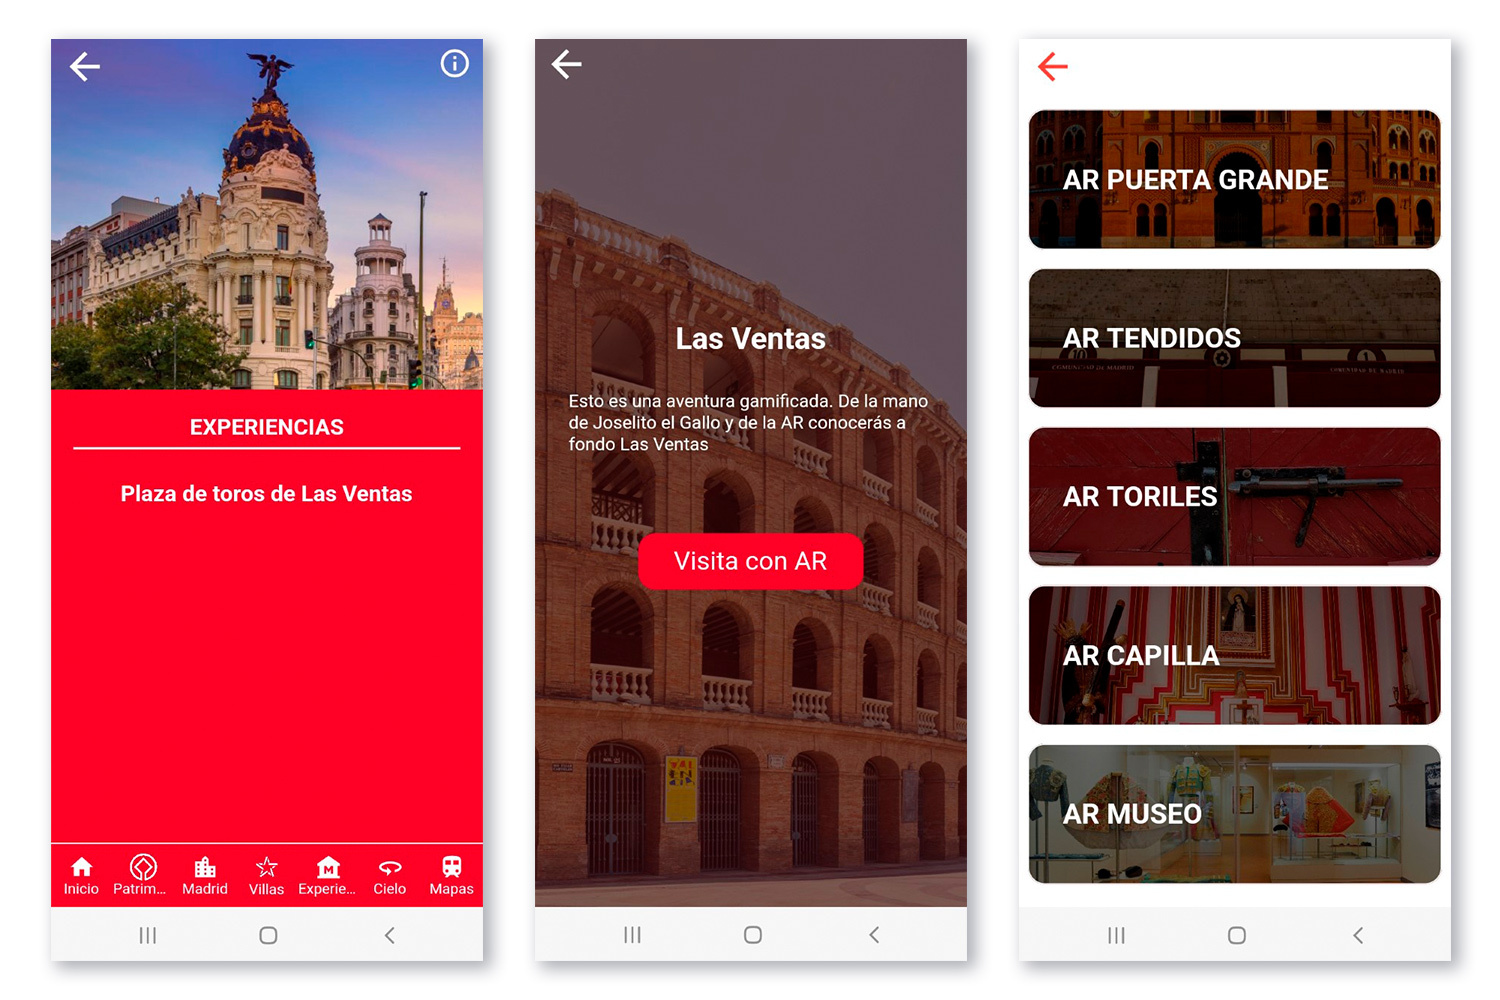 navegación para descubrir la Comunidad de Madrid a través de la app